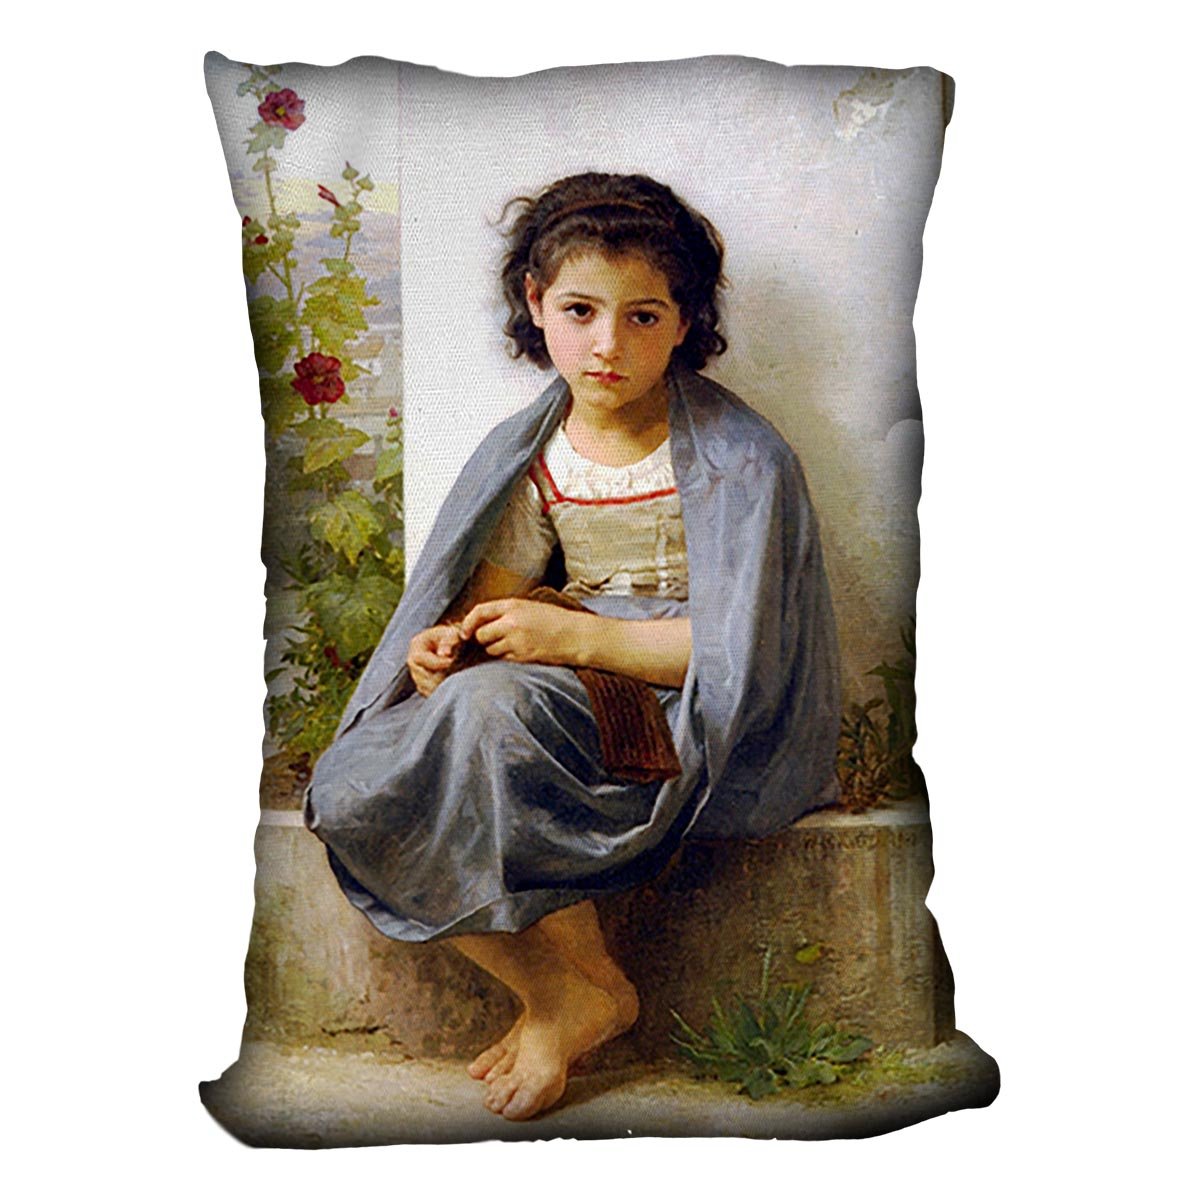 The Little Knitter By Bouguereau Throw Pillow